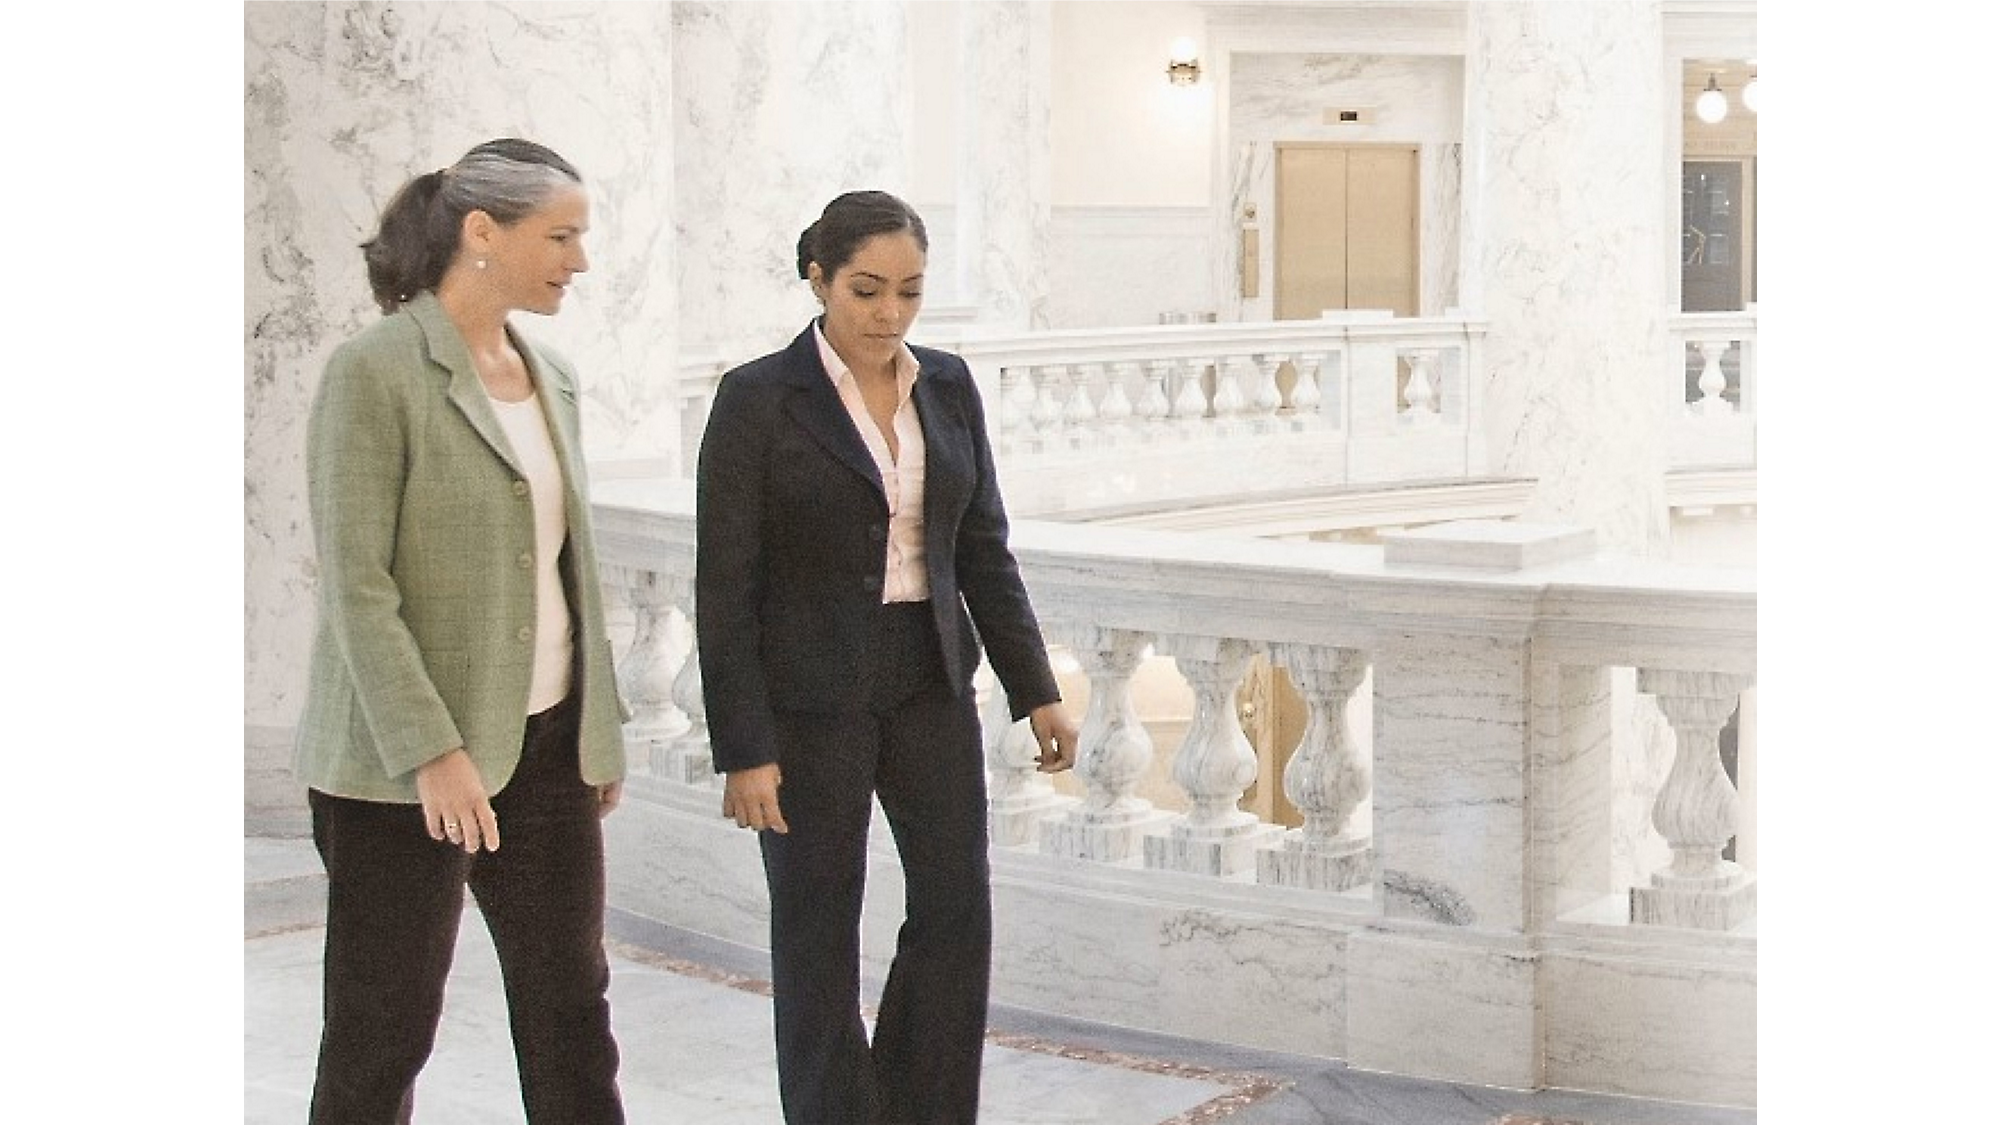 Dos mujeres caminando y conversando en un pasillo de mármol con balaustradas ornamentadas en el fondo.